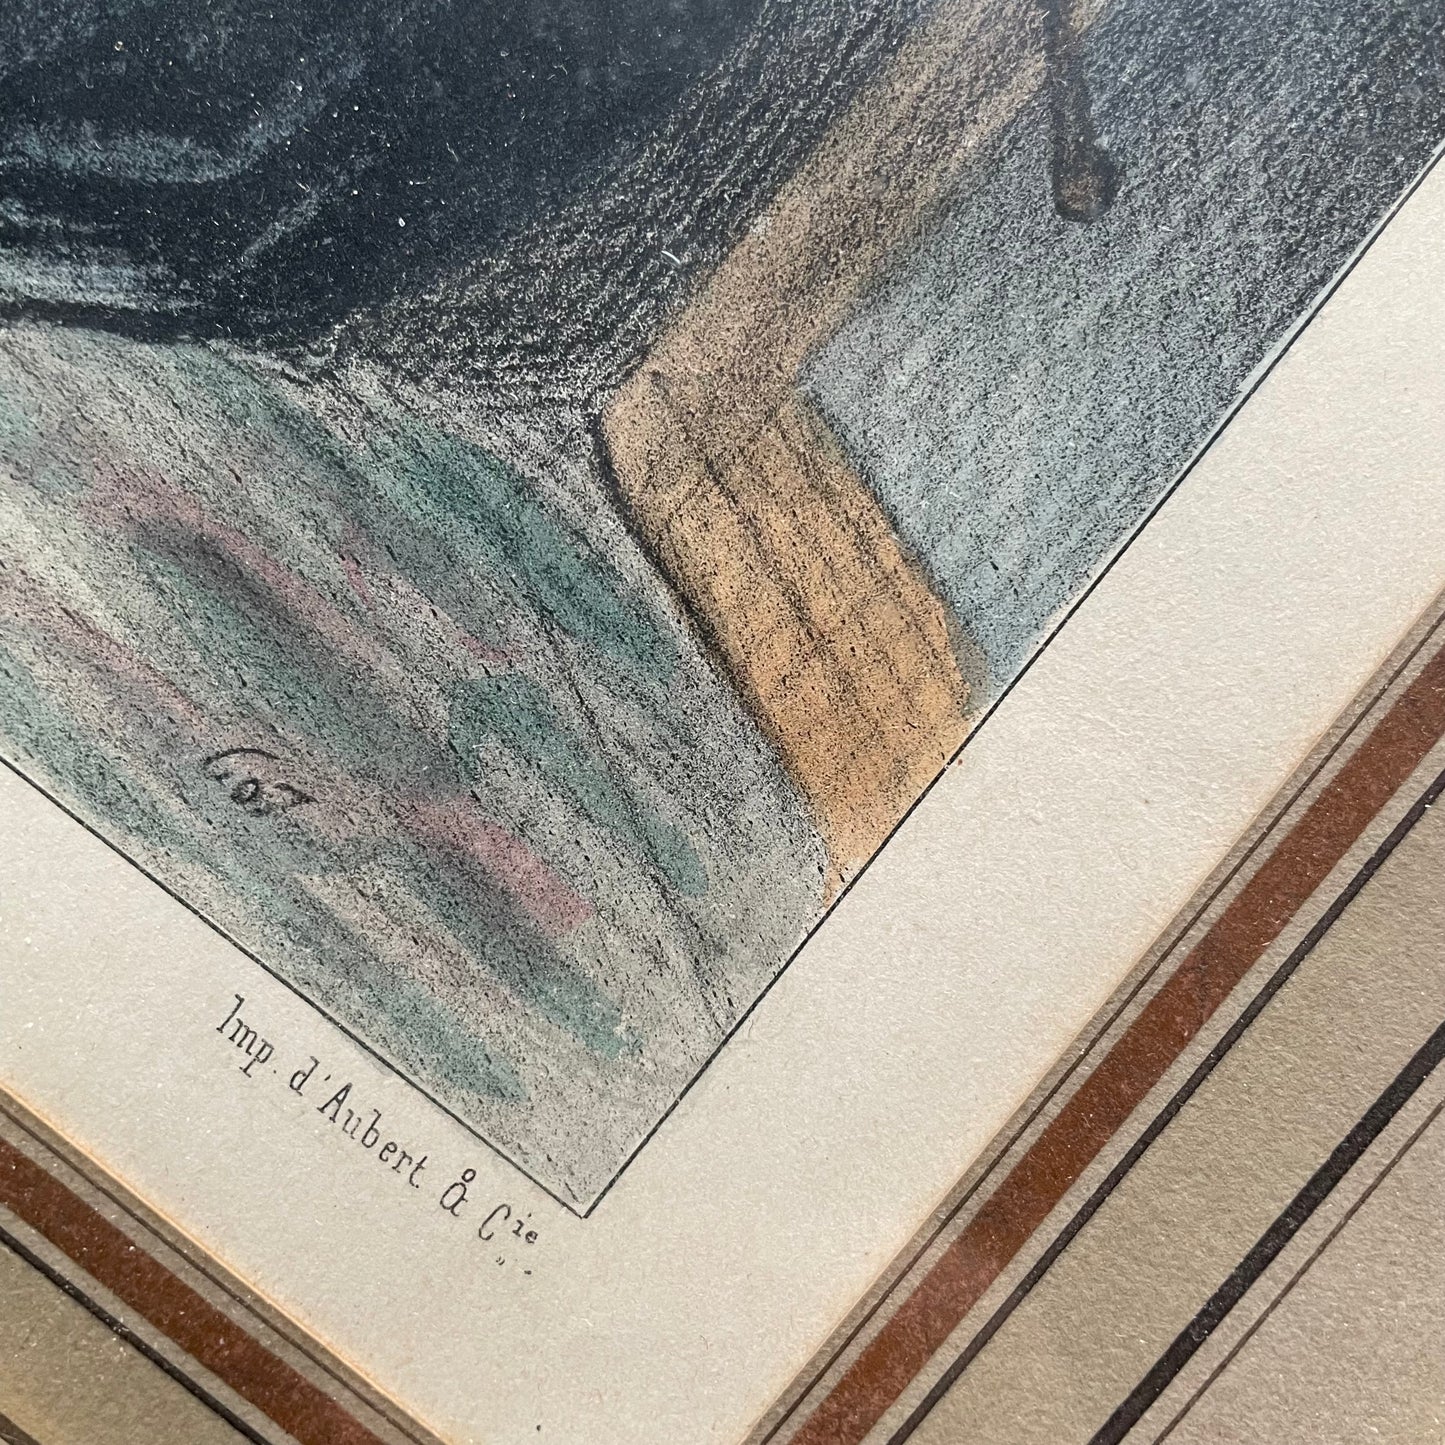 Riding Habit Print | Honoré Daumier | Les bas-bleus | 1844